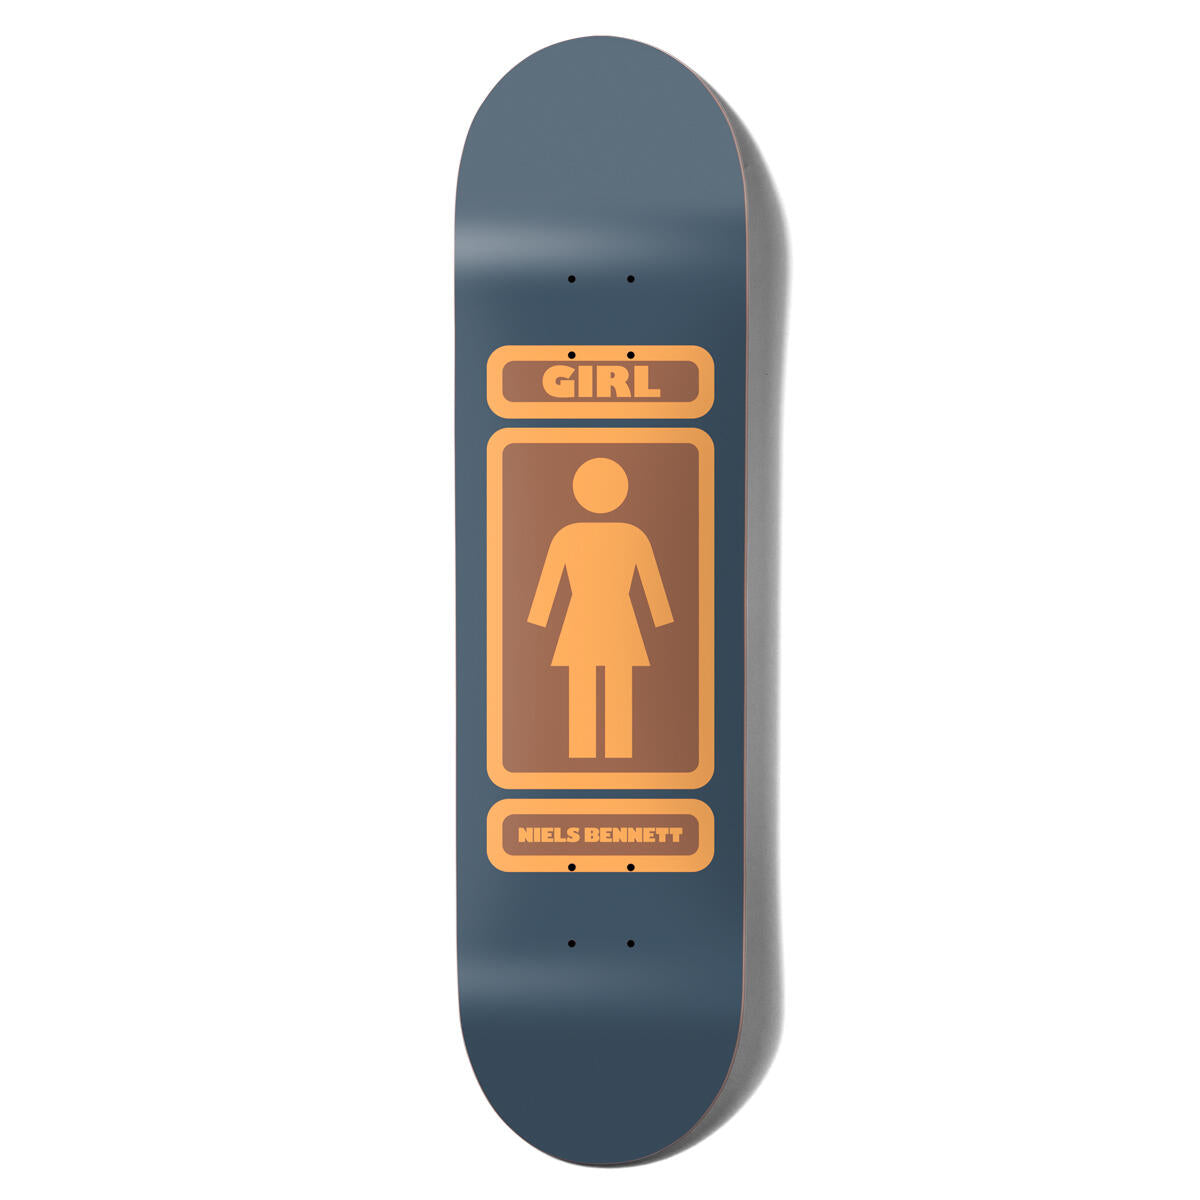 Girl Niels Bennett 93' Til Navy Skateboard Deck